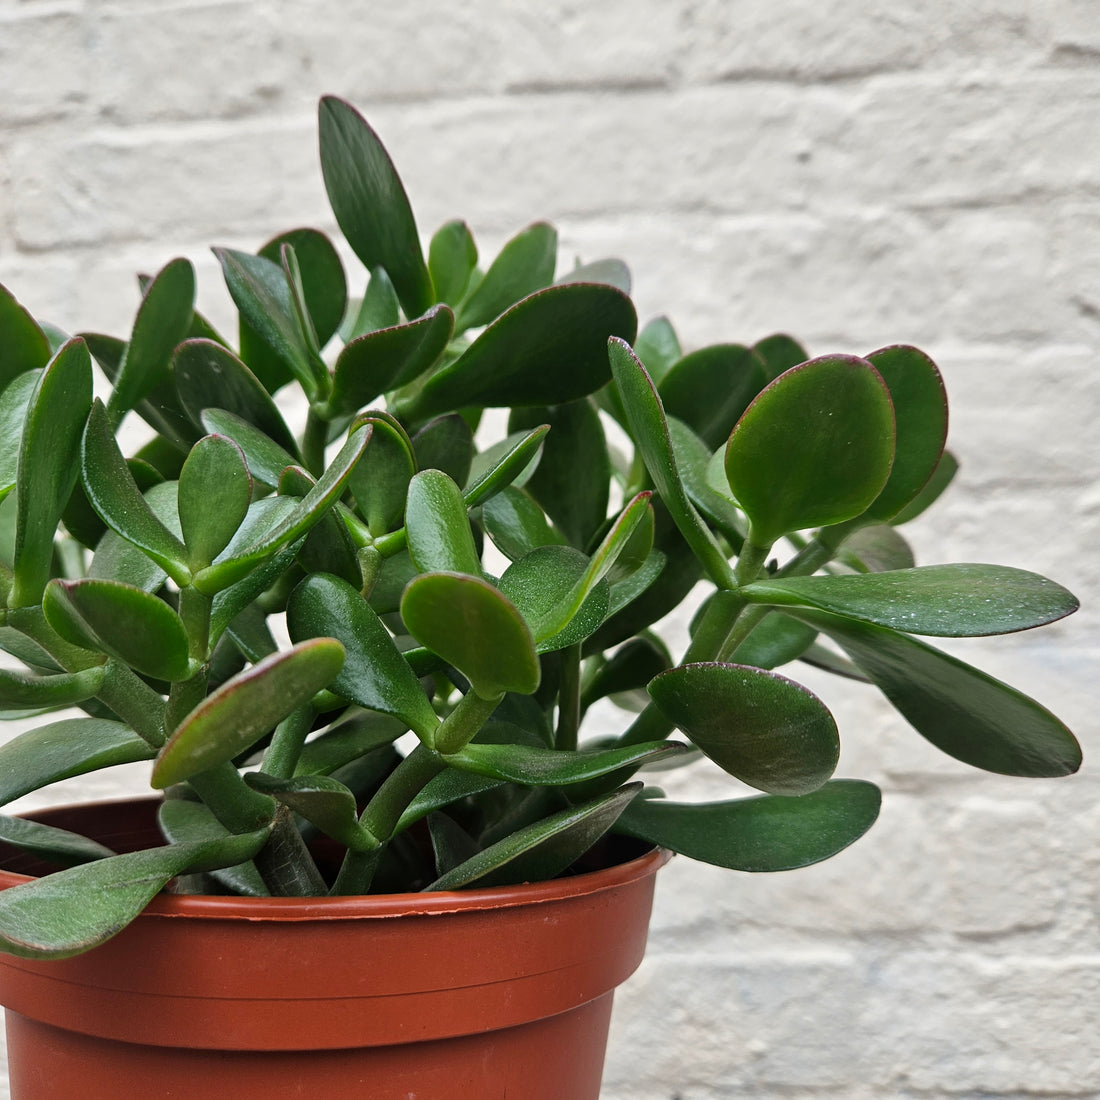 Crassula ovata (Jade plant/Succulent)